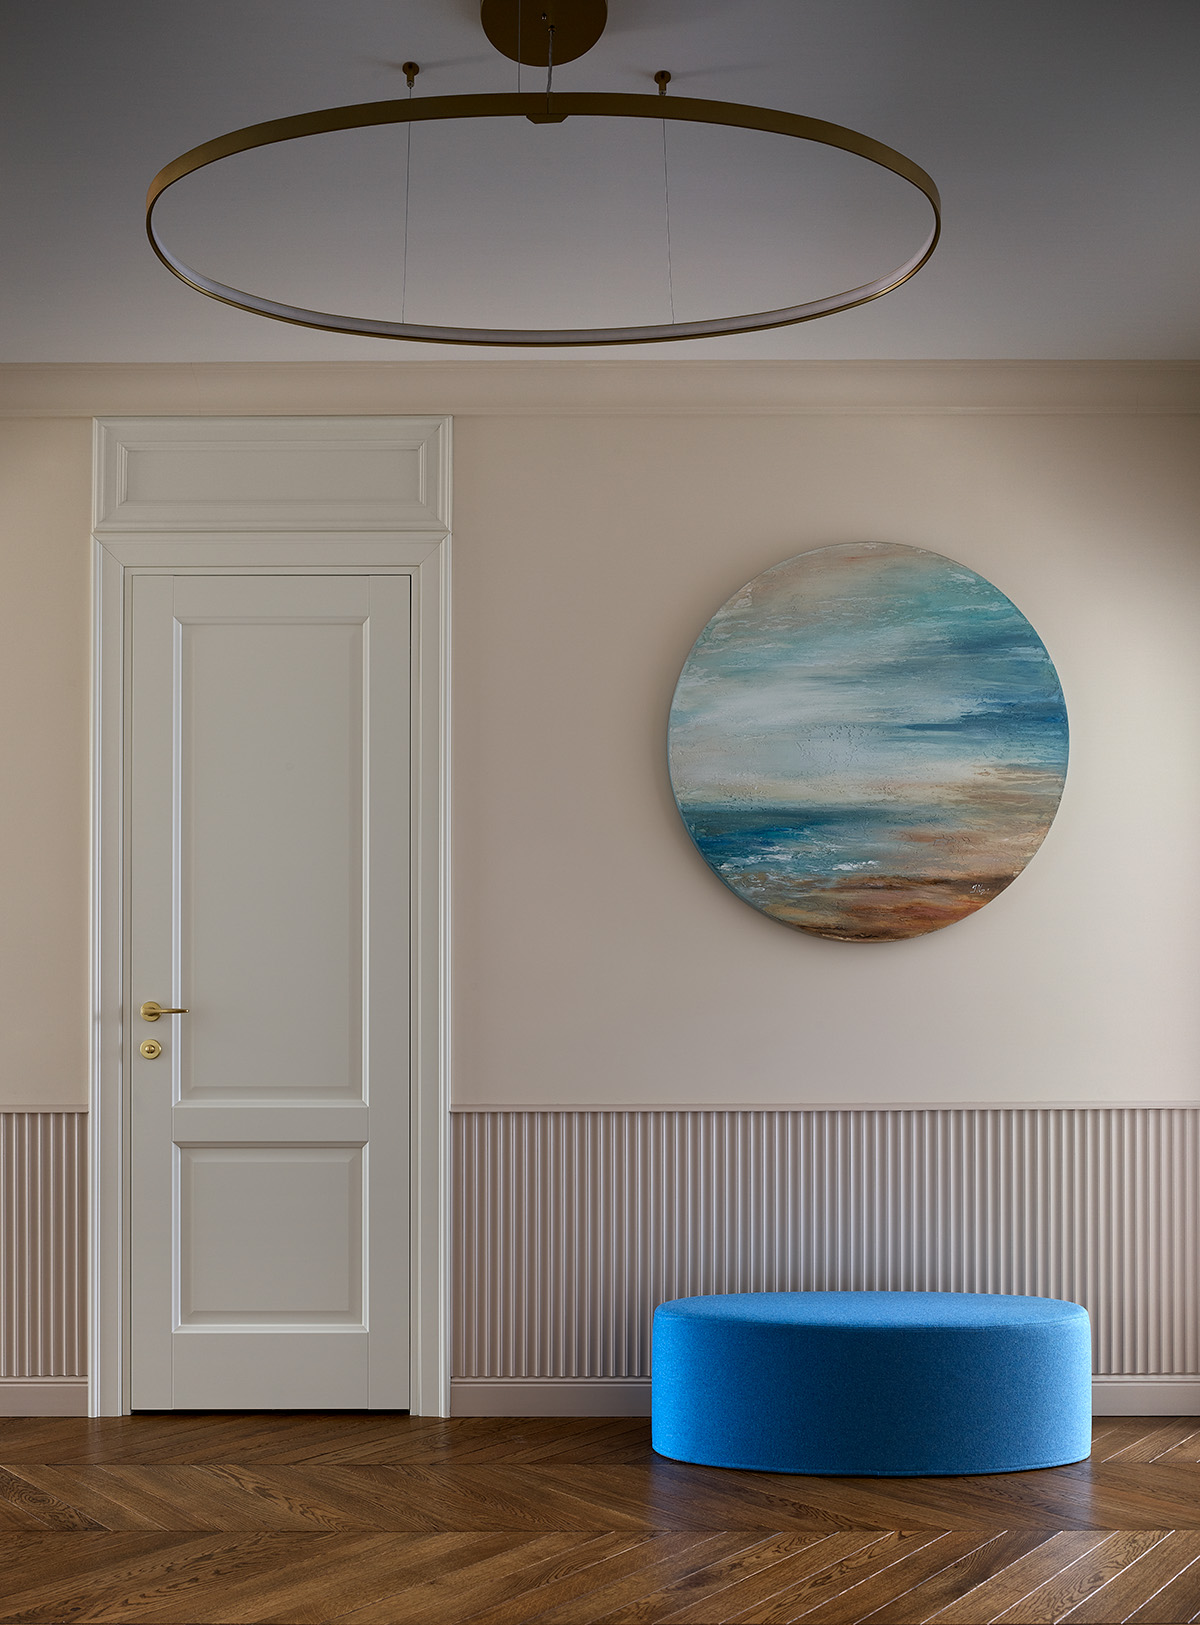 Hành lang lối vào căn hộ đẹp dịu dàng với cánh cửa trắng trên nền tường màu be. Chiếc ghế nghỉ chân hình oval màu xanh lam kết hợp với bức tranh biển cả treo tường của họa sĩ Irina Nuzhdina khiến lòng người lắng lại khi nhìn ngắm.